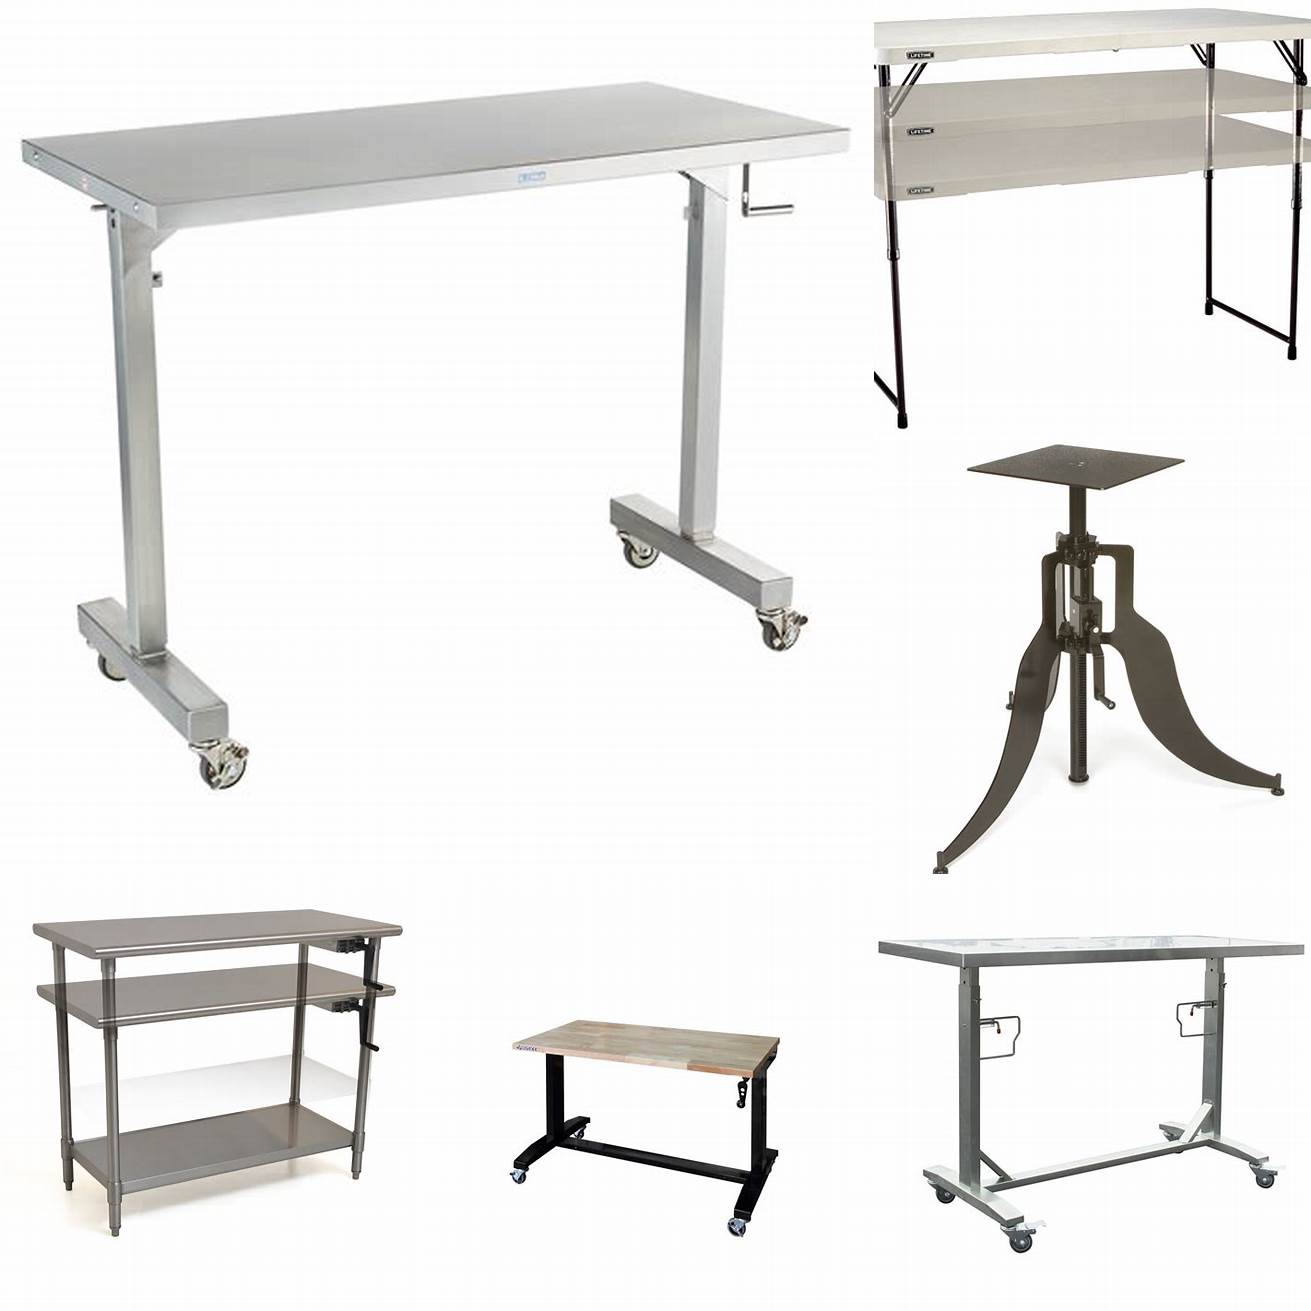 Adjustable-height metal table